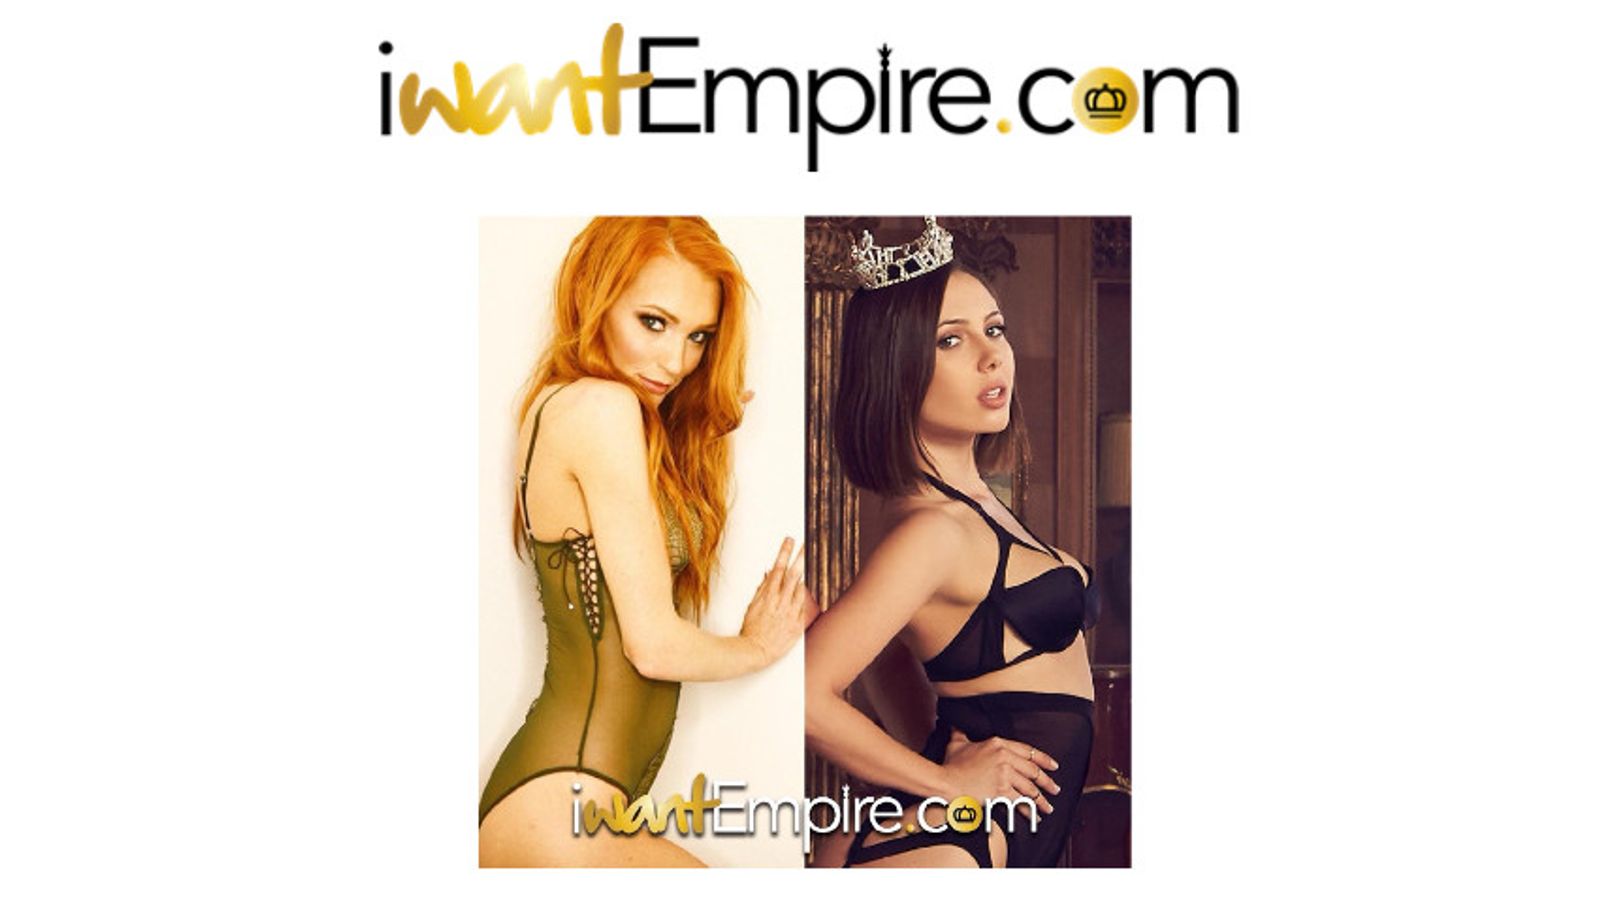 iWantEmpire Congratulates Jenna Sativa, Jenny Blighe for AVN Wins